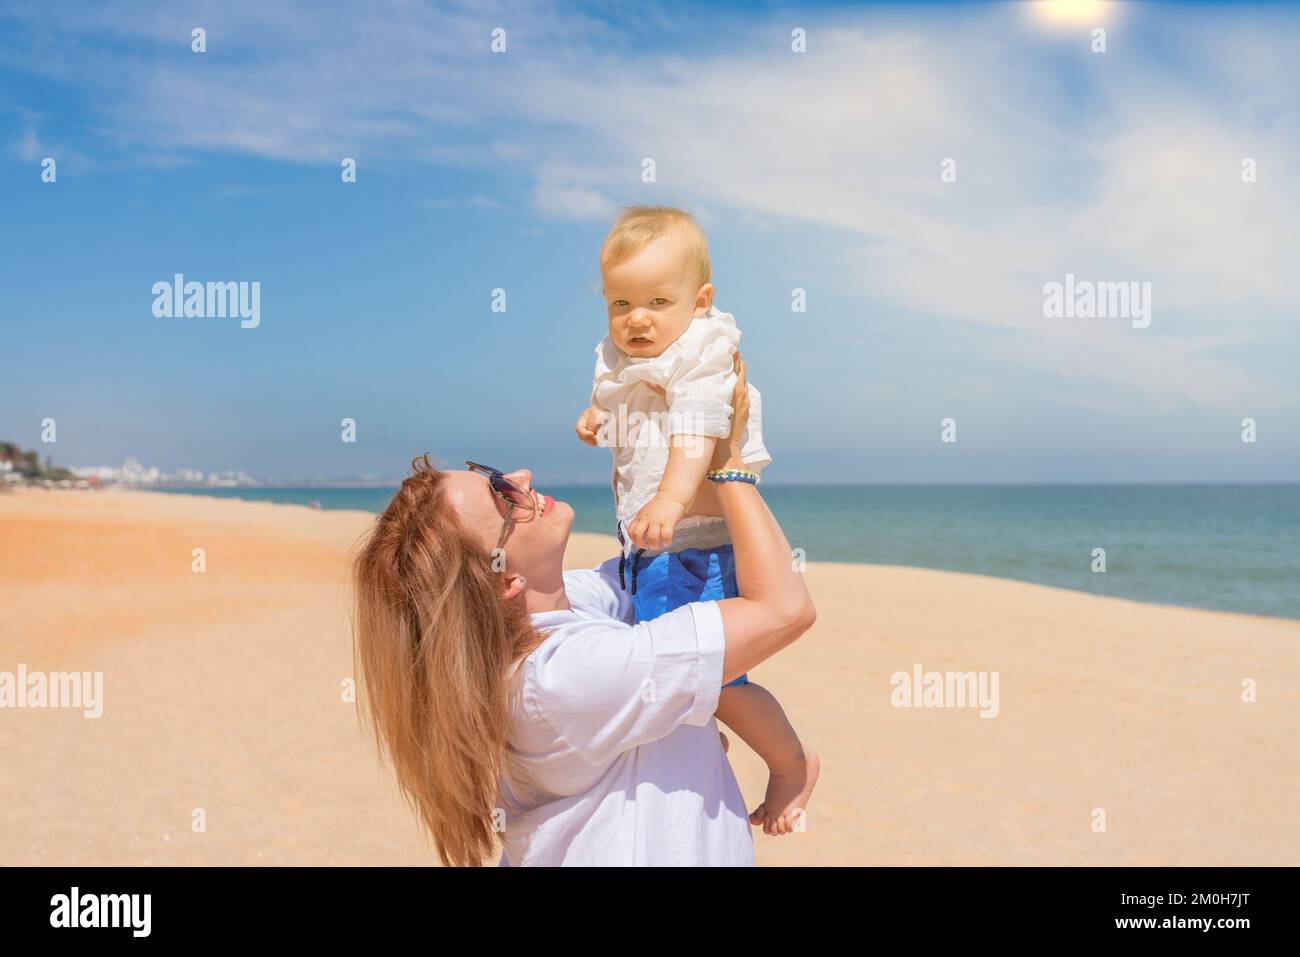 Giovane madre in un vestito bianco sulla spiaggia vicino al mare tiene il suo figlio bambino nelle braccia e gioisce al sole. Concetto di maternità e amore per i bambini. Foto Stock